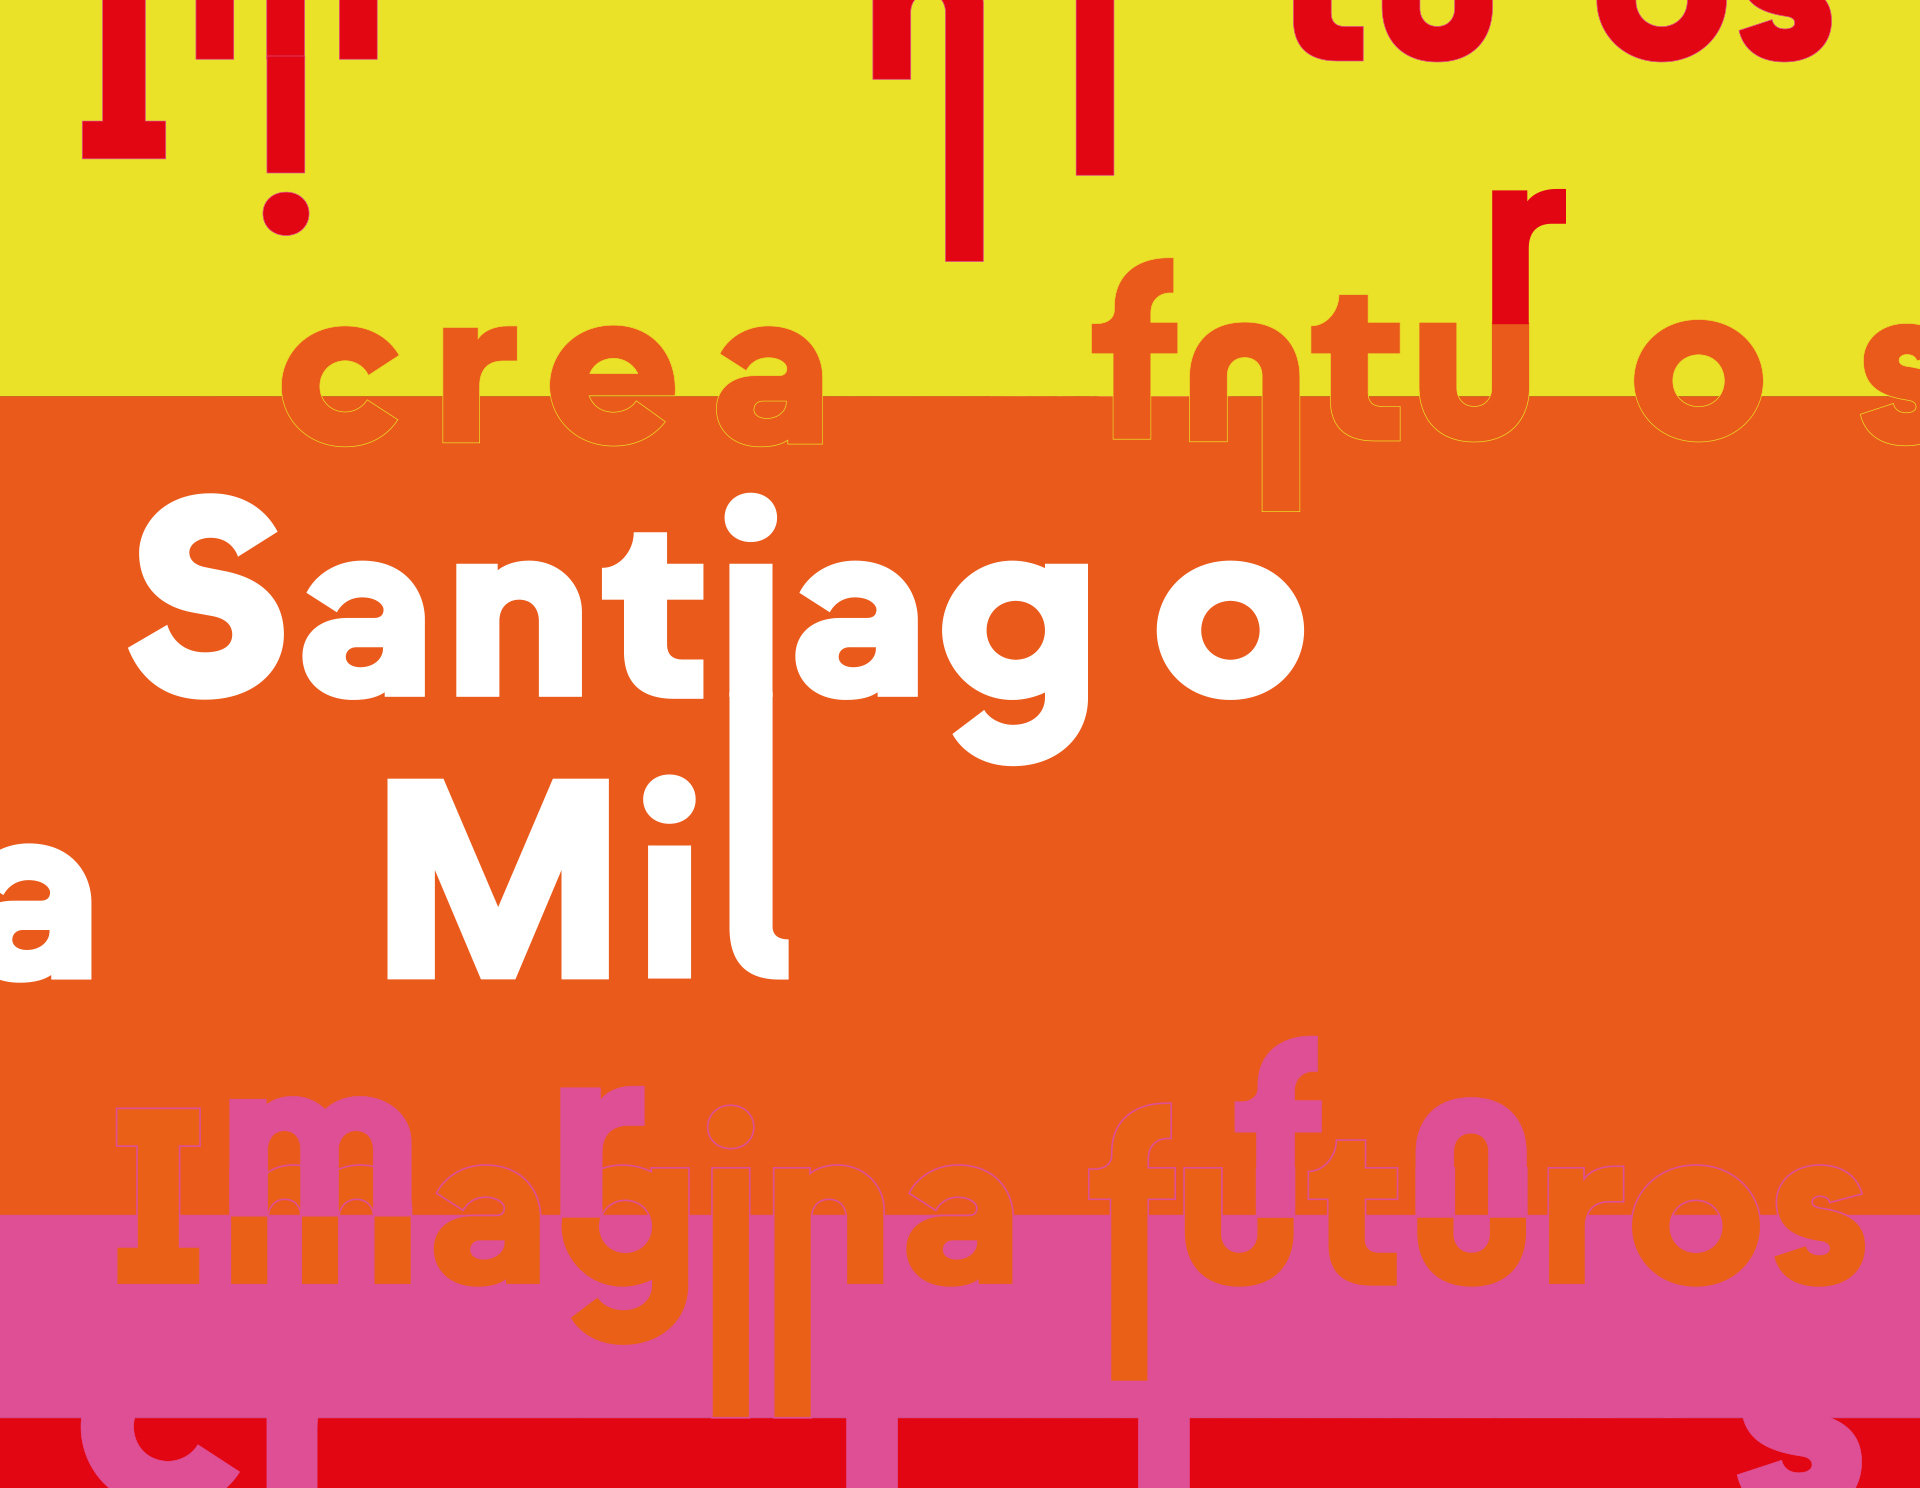 Santiago a Mil en M100